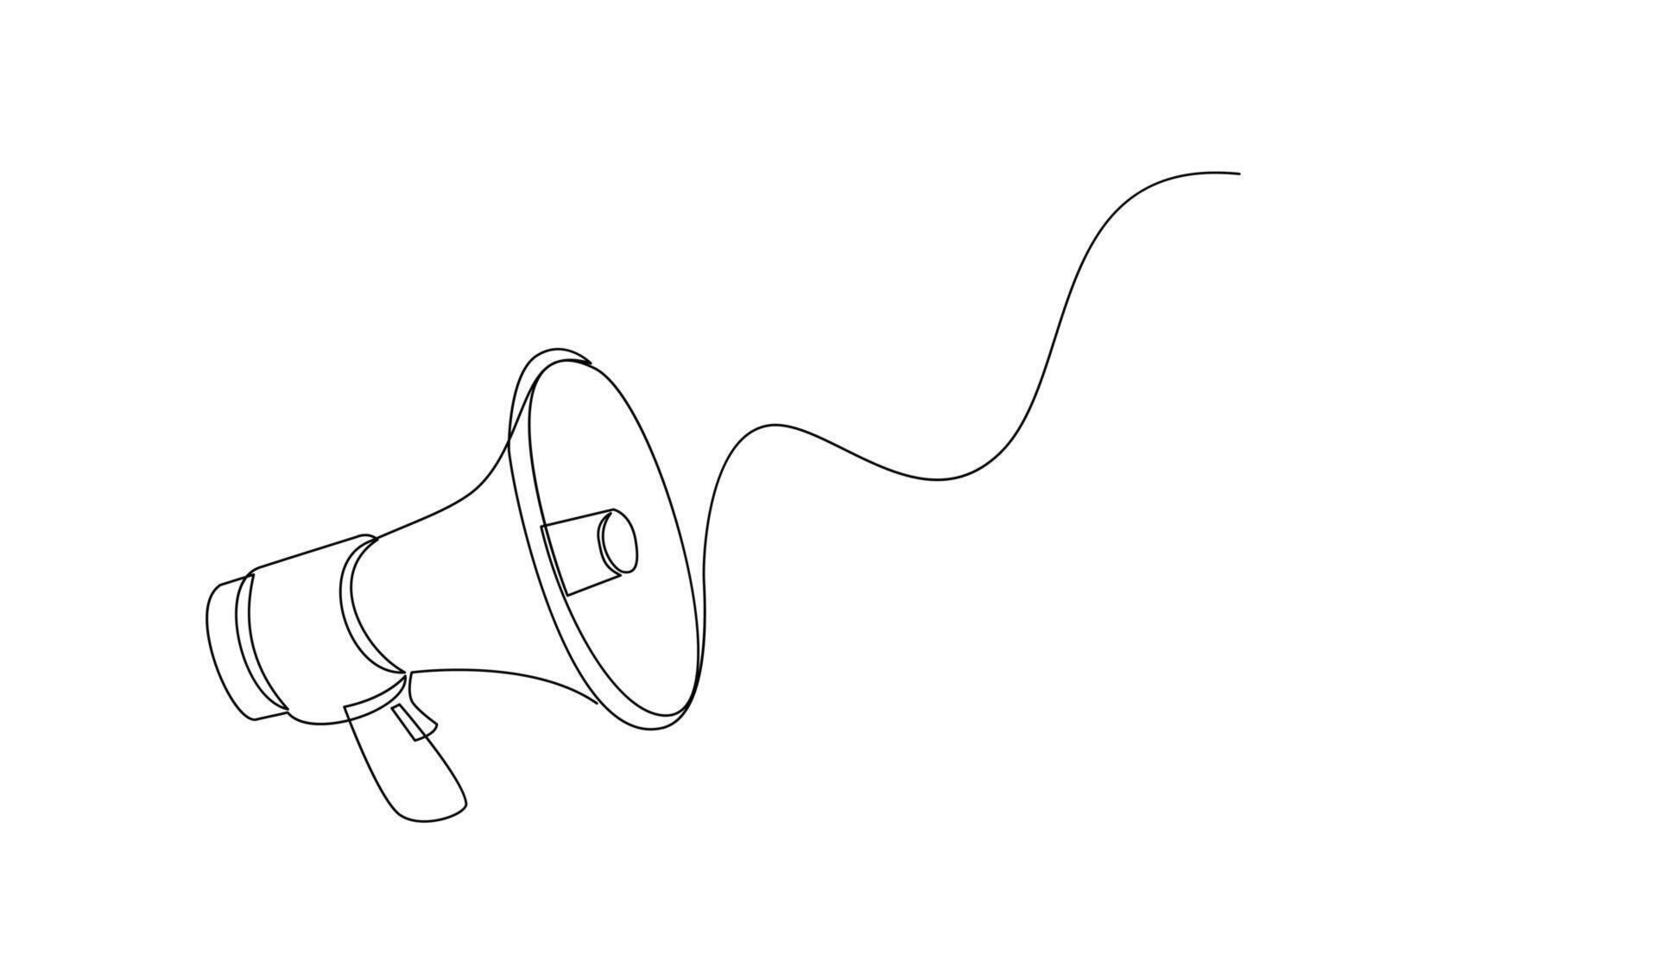 doorlopend single een lijn kunst tekening van megafoon spreker voor nieuws en Promotie vector illustratie